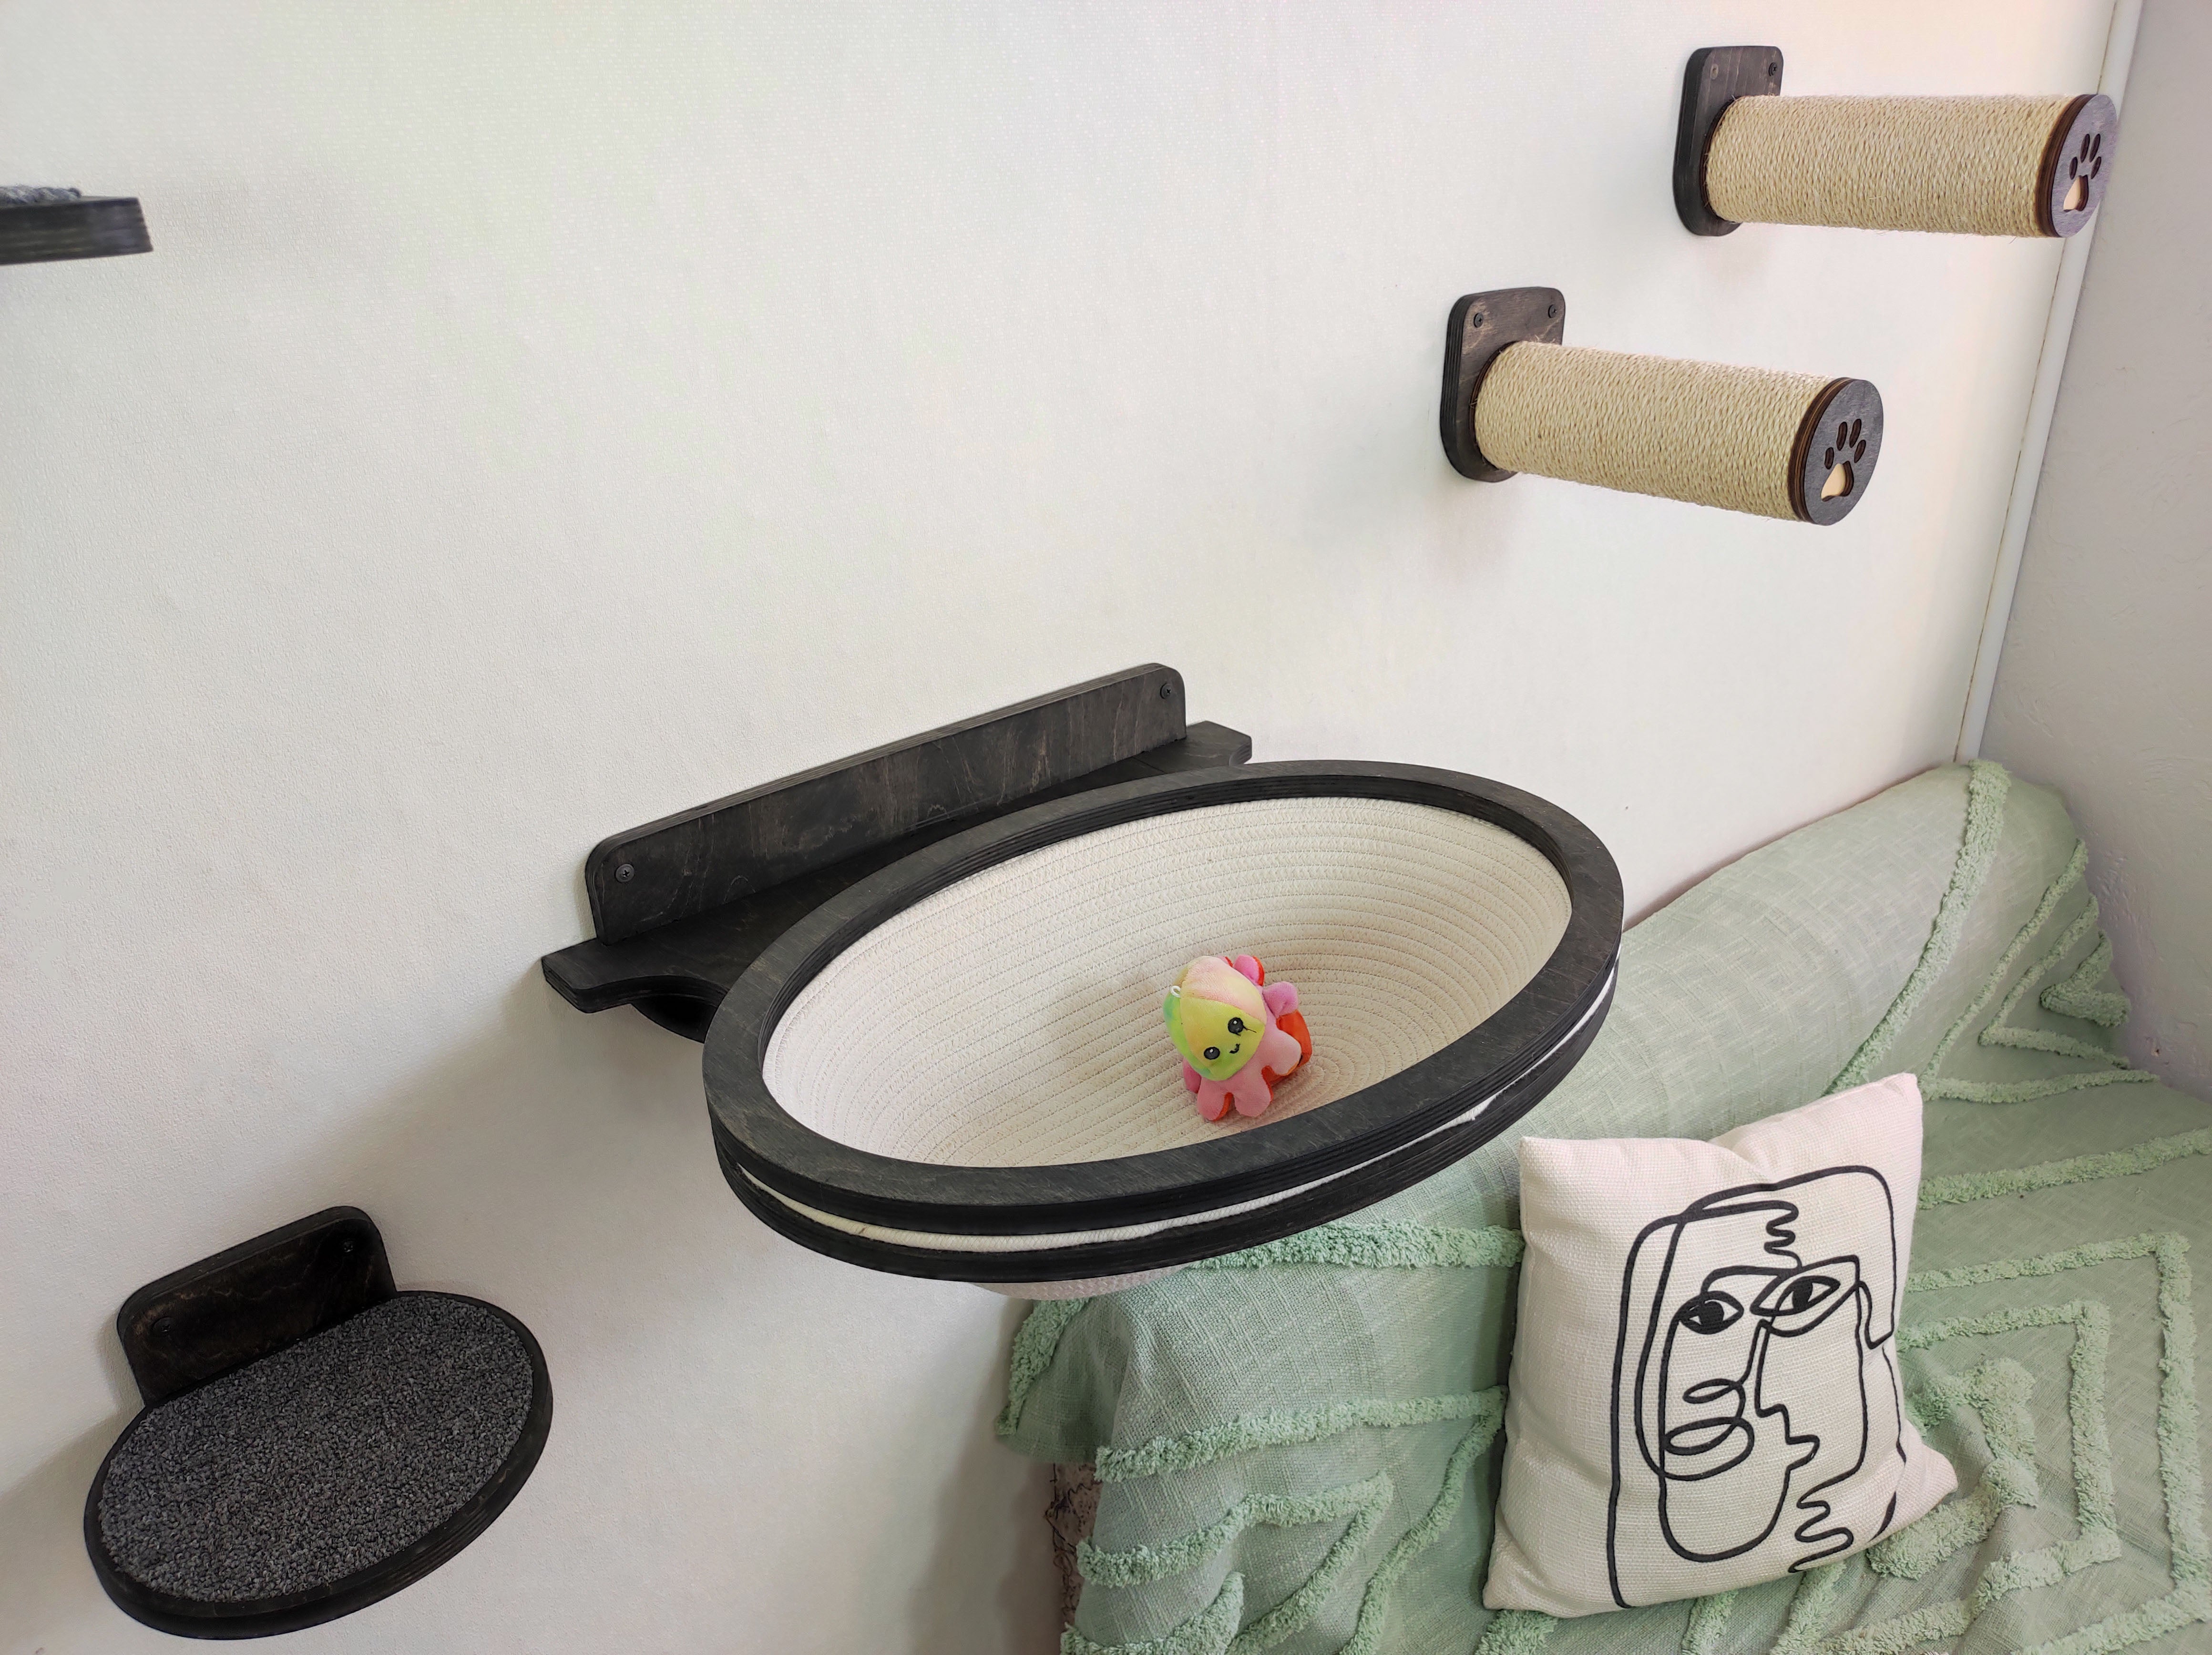 Wall mounted modern cat shelves